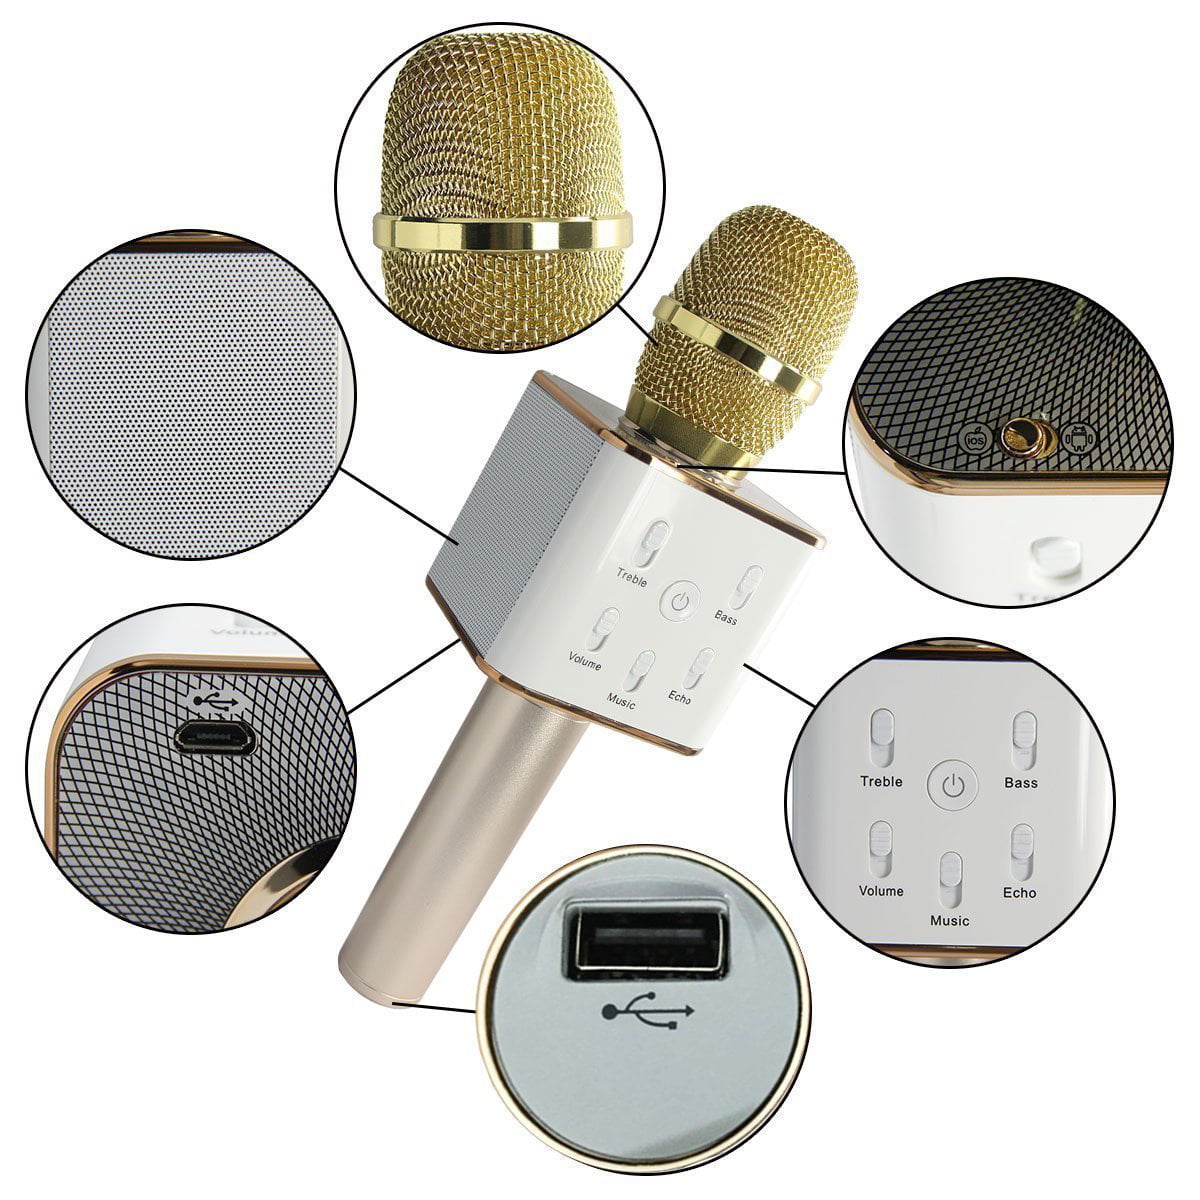 Portable W Ireless Karaoke Microphone Built In B Luetooth Speaker